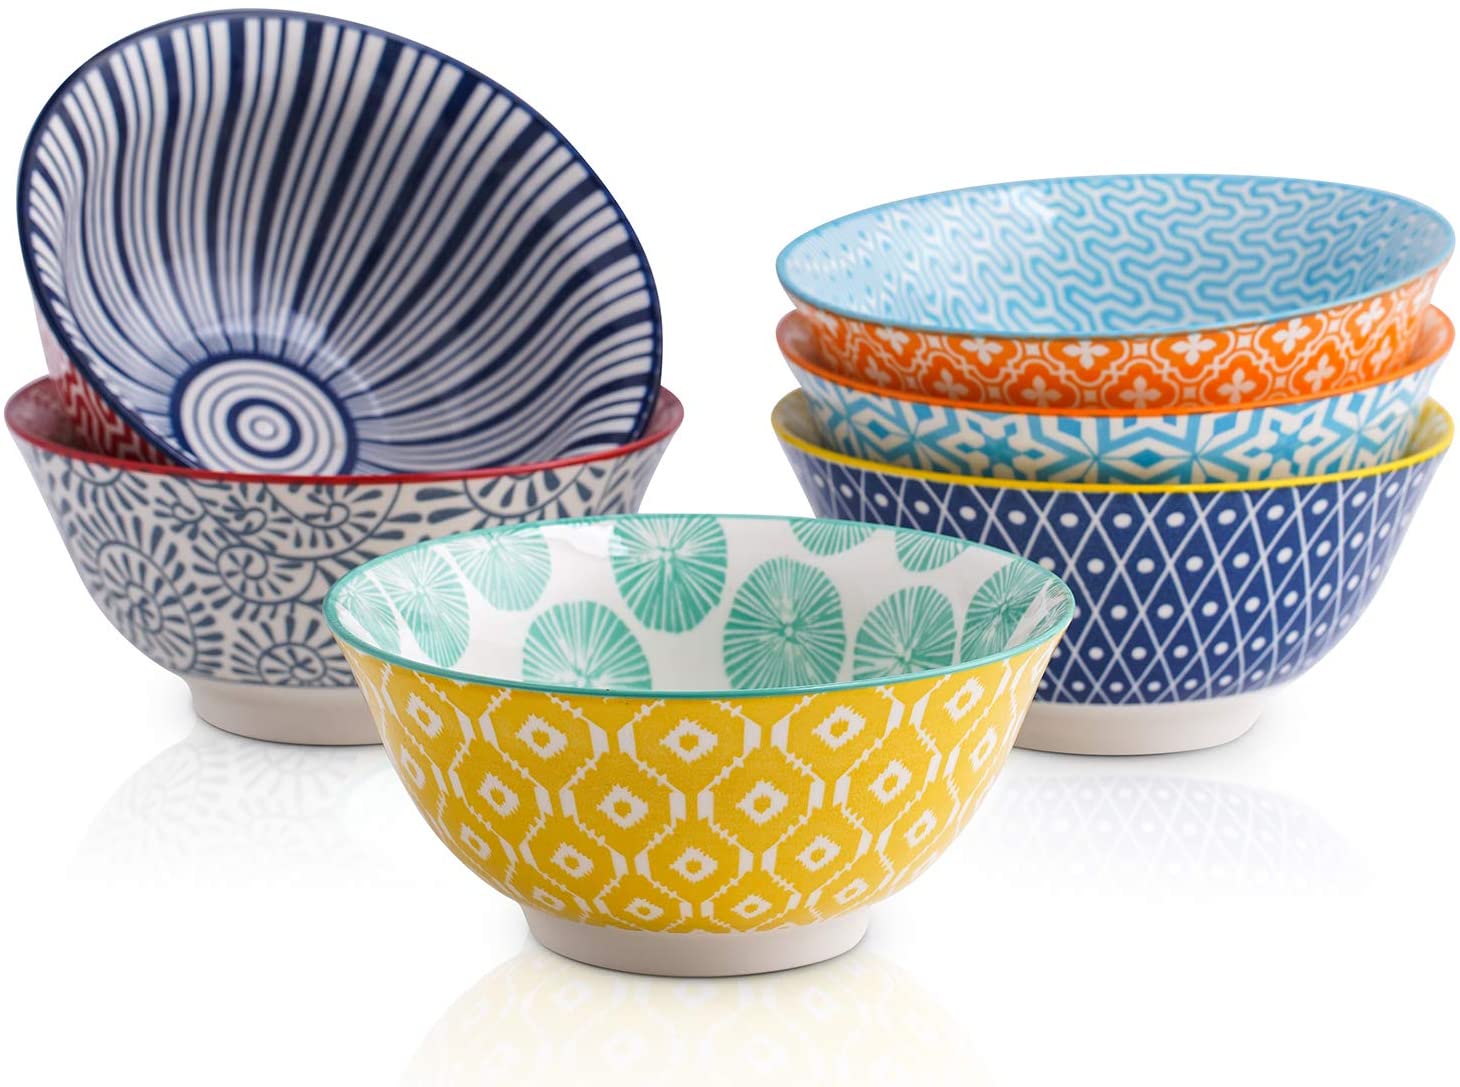 Selamica ceramic bowls set